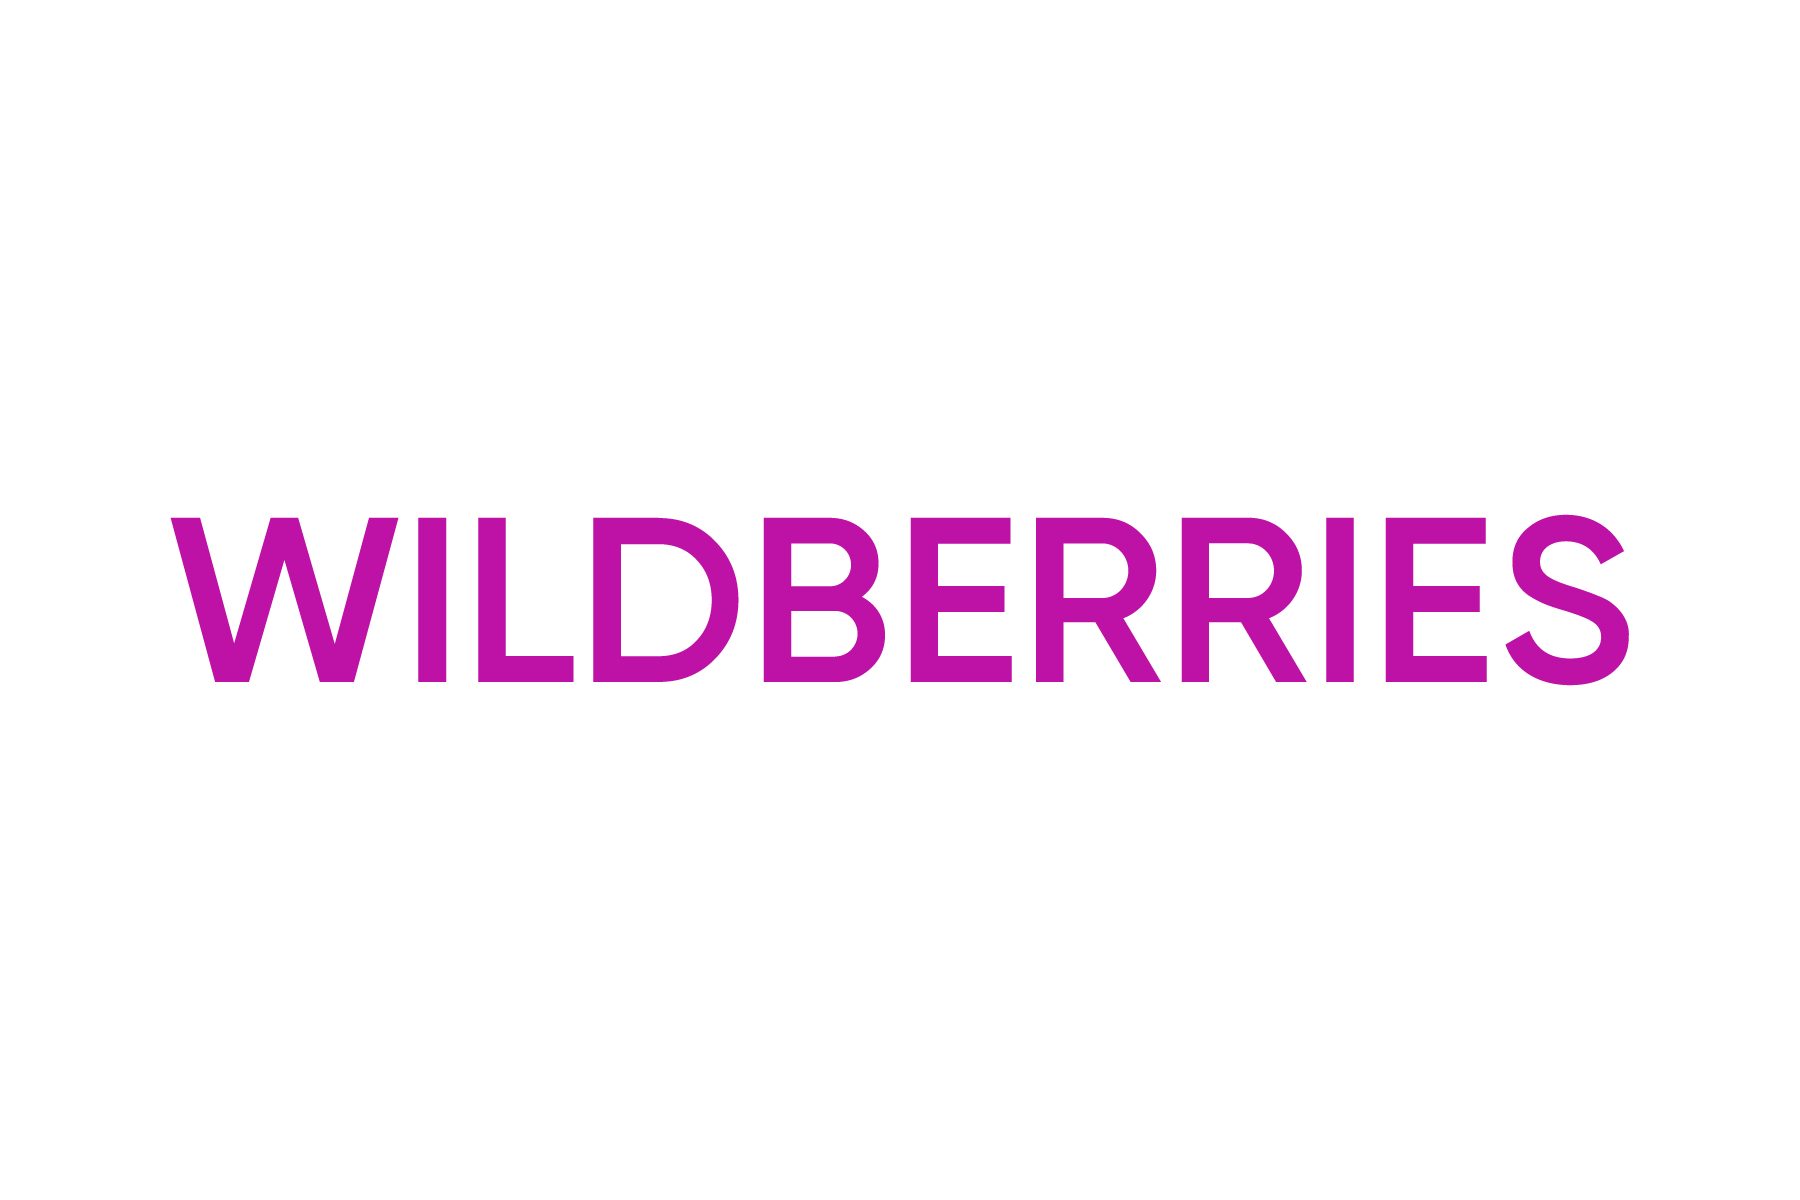 Wildberries. Wildberries лого. Надпись Wildberries. Логотип ва. Вб е